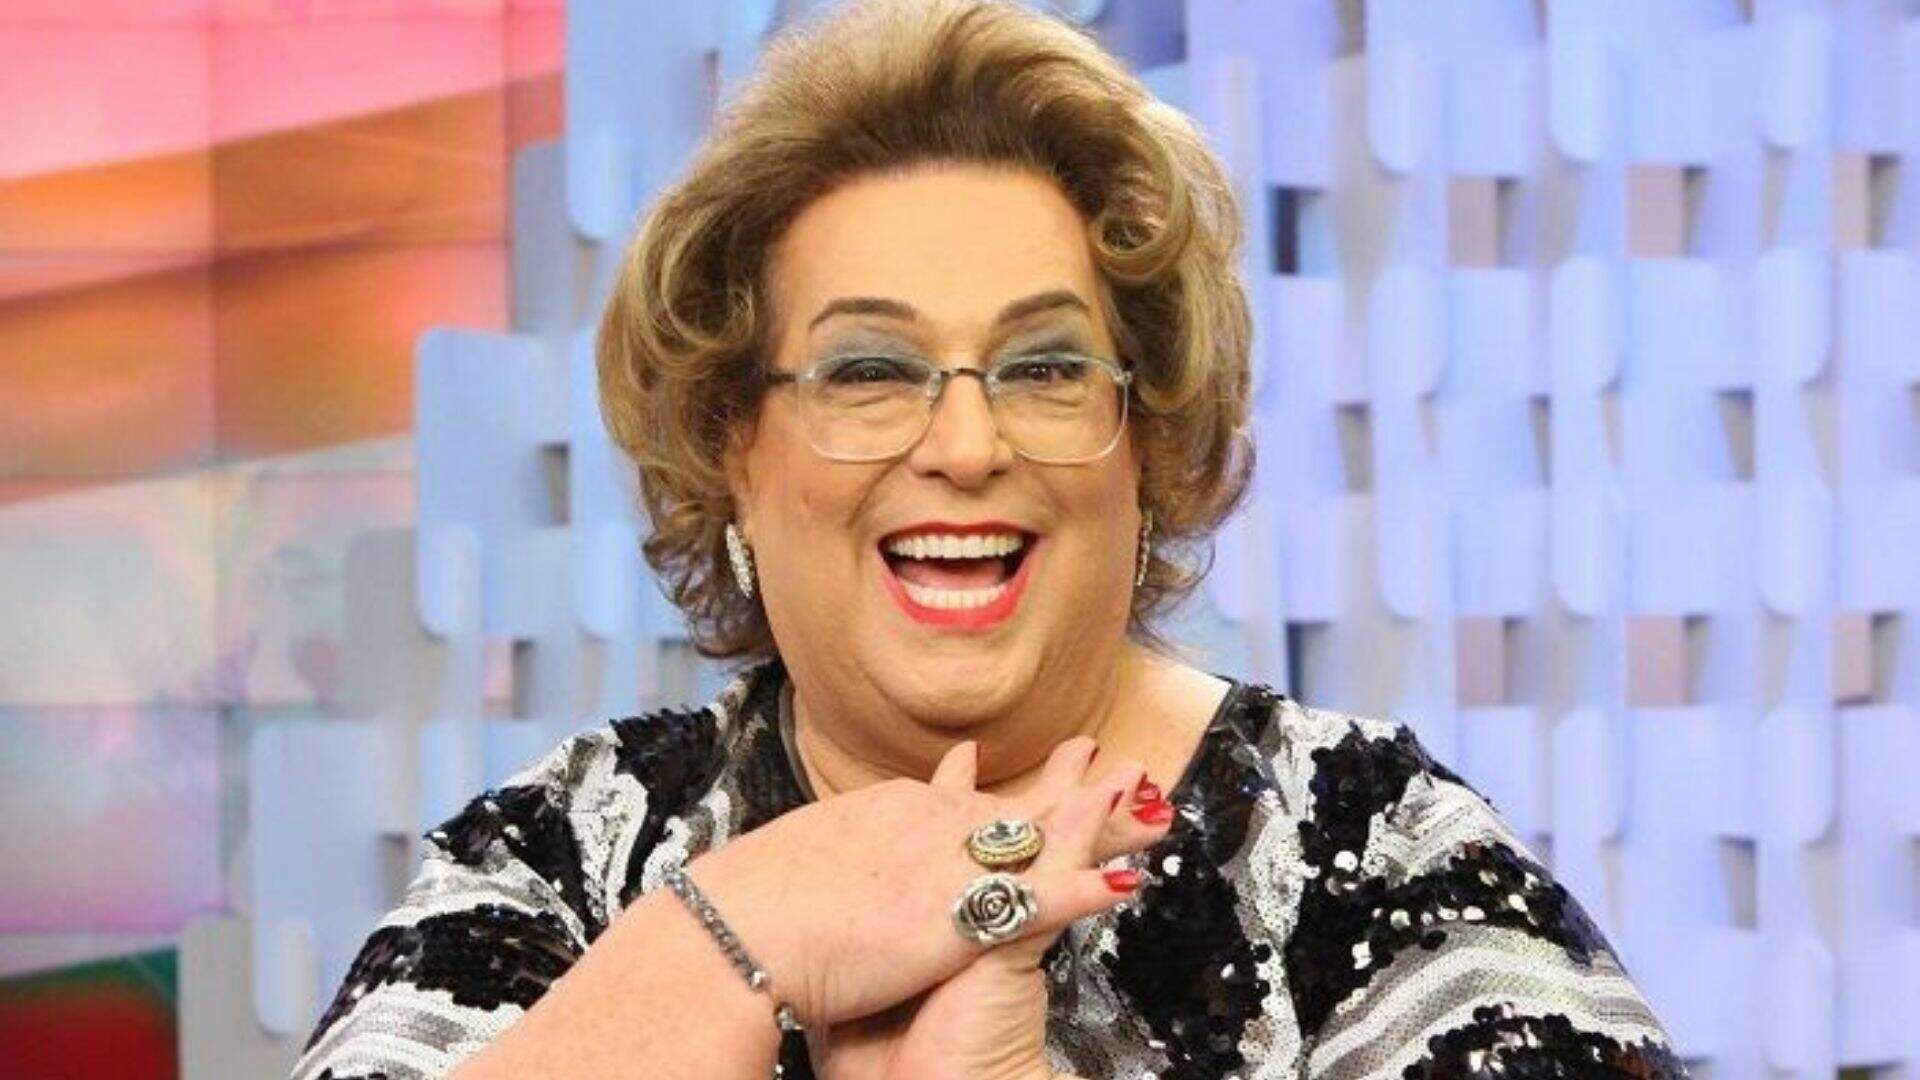 Mamma Bruschetta é uma apresentadora brasileira, começou na TV apresentando o TV MIX como Condessa Giovanna na TV Gazeta